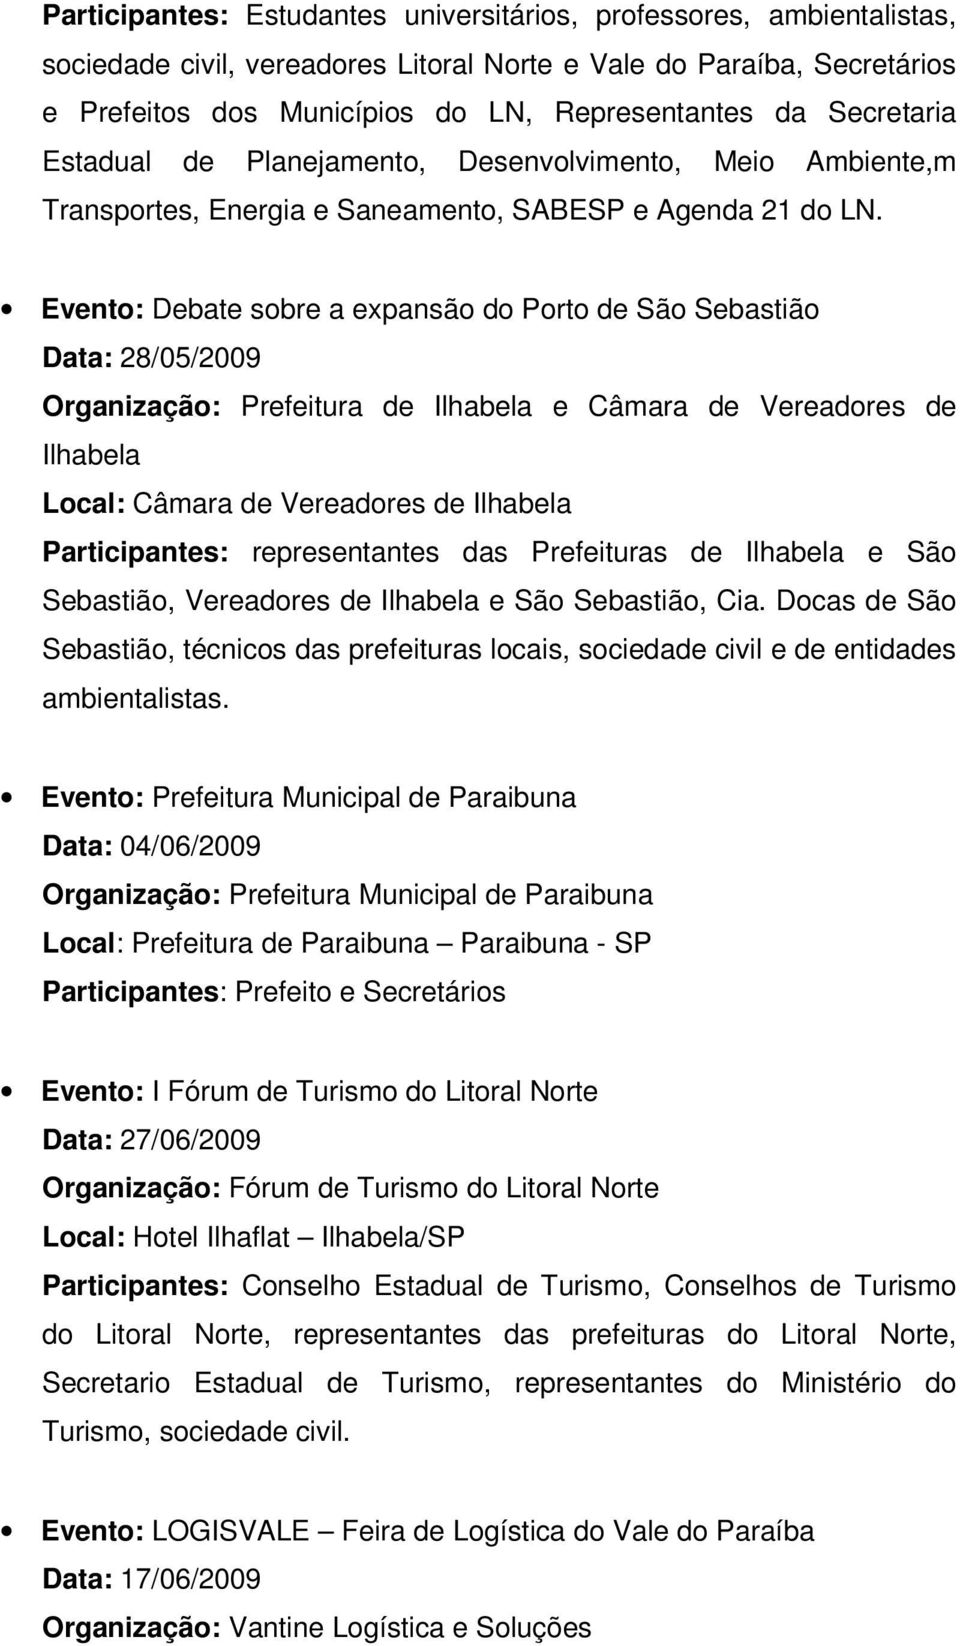 Evento: Debate sobre a expansão do Porto de São Sebastião Data: 28/05/2009 Organização: Prefeitura de Ilhabela e Câmara de Vereadores de Ilhabela Local: Câmara de Vereadores de Ilhabela